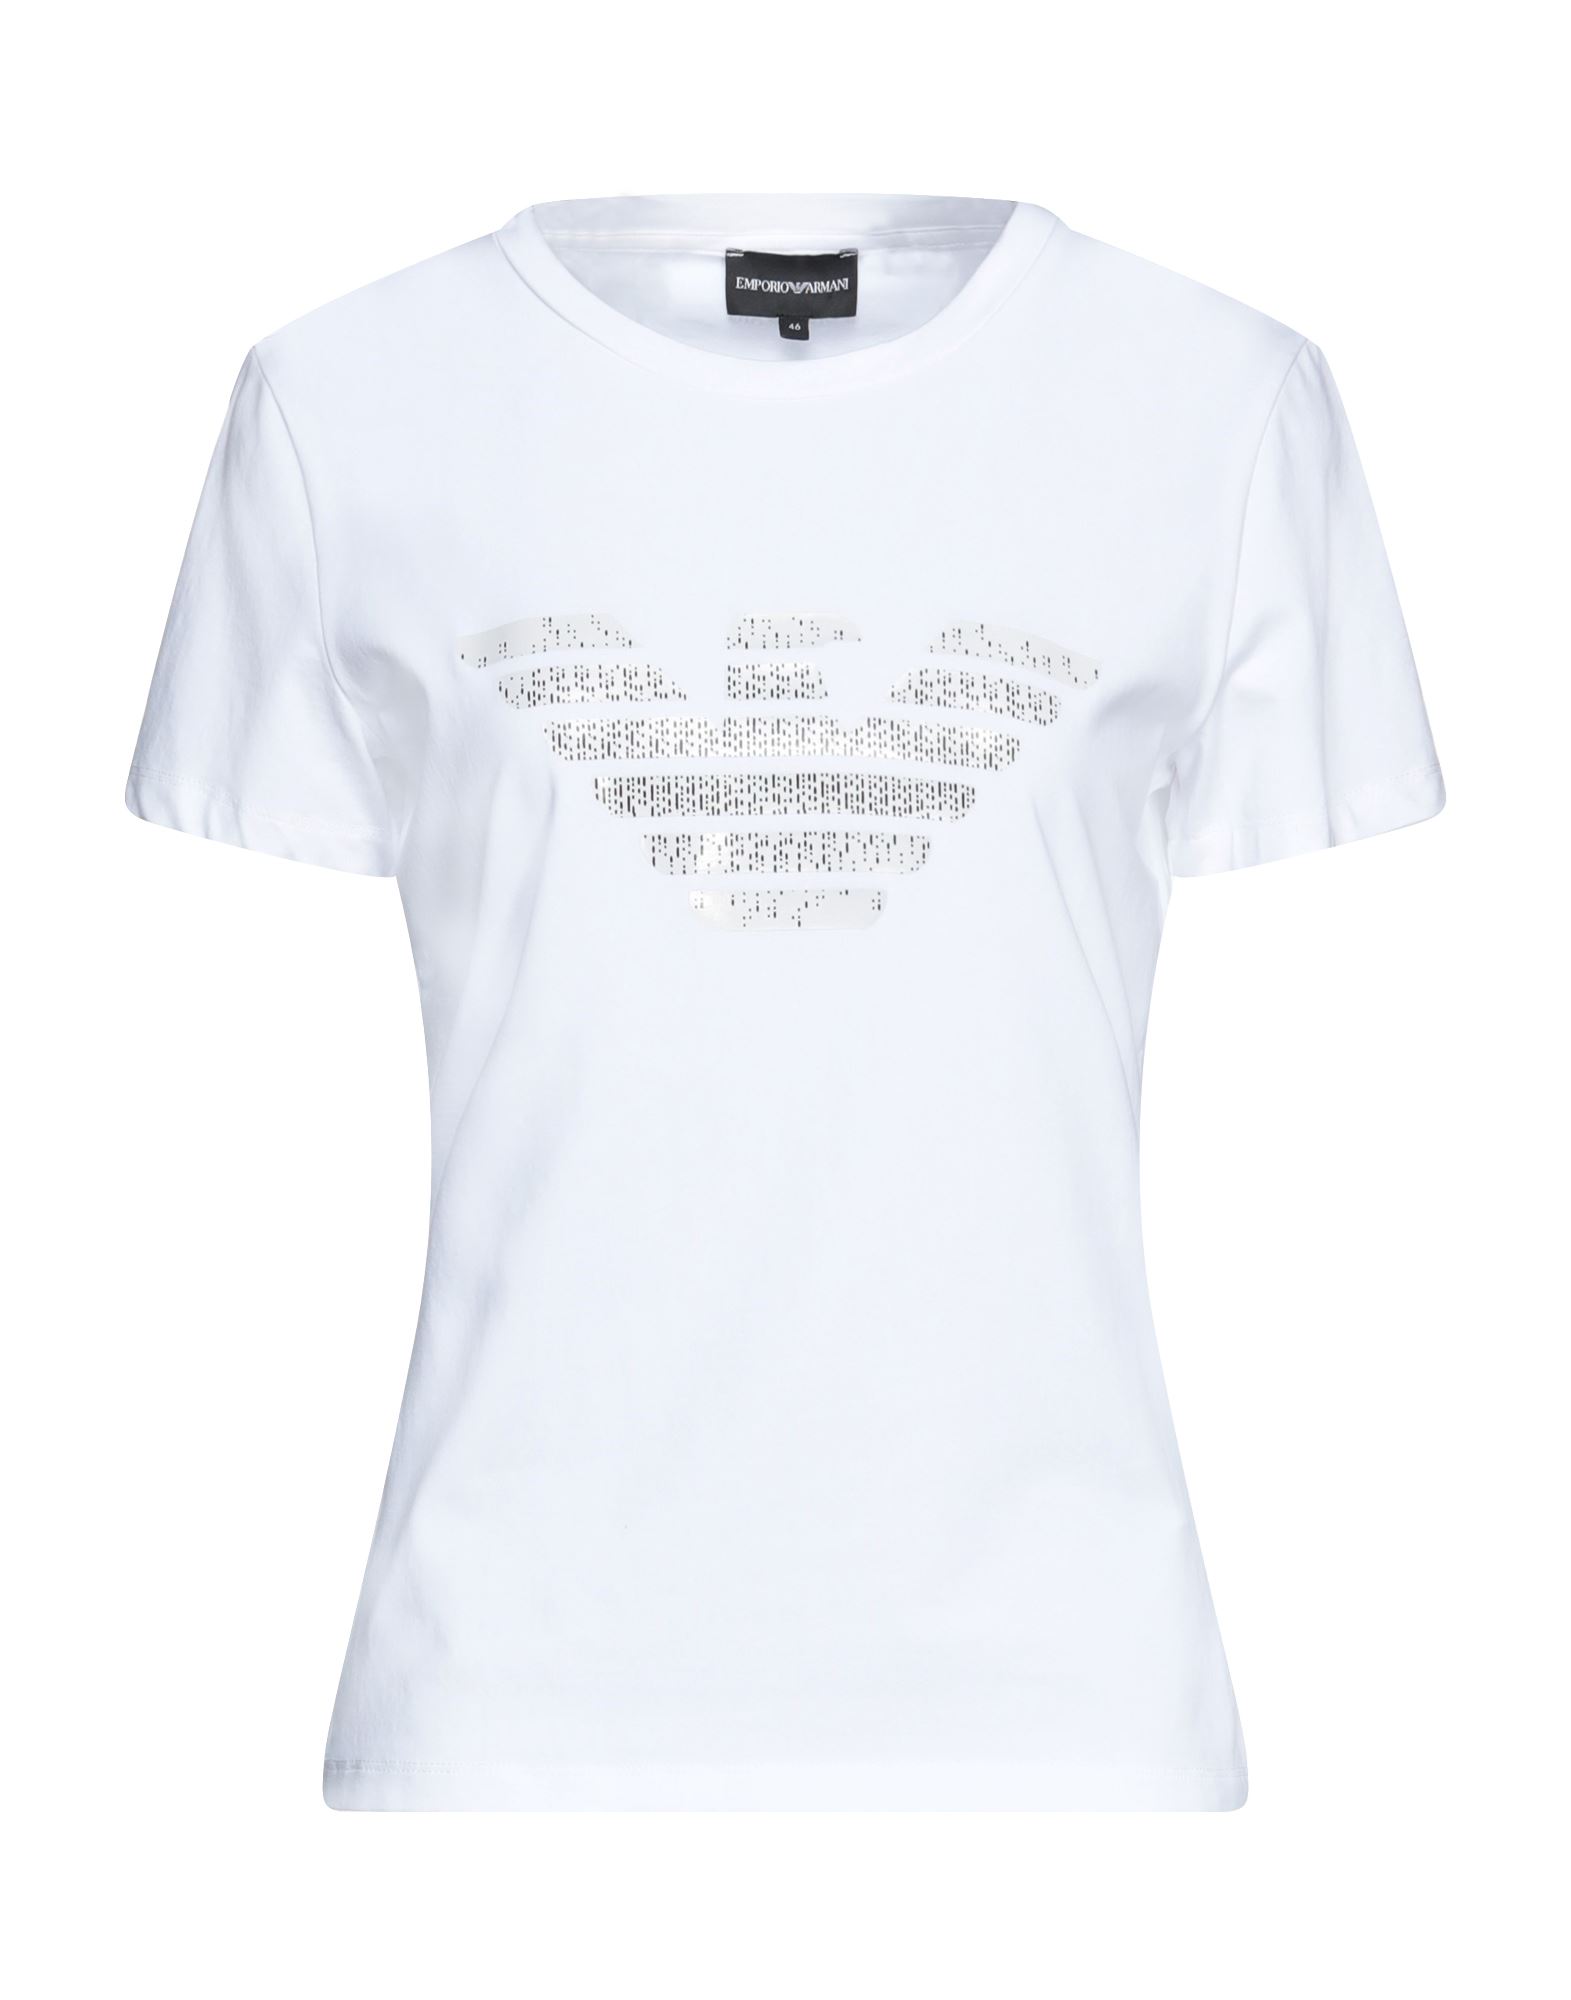 Emporio Armani T-shirts In White